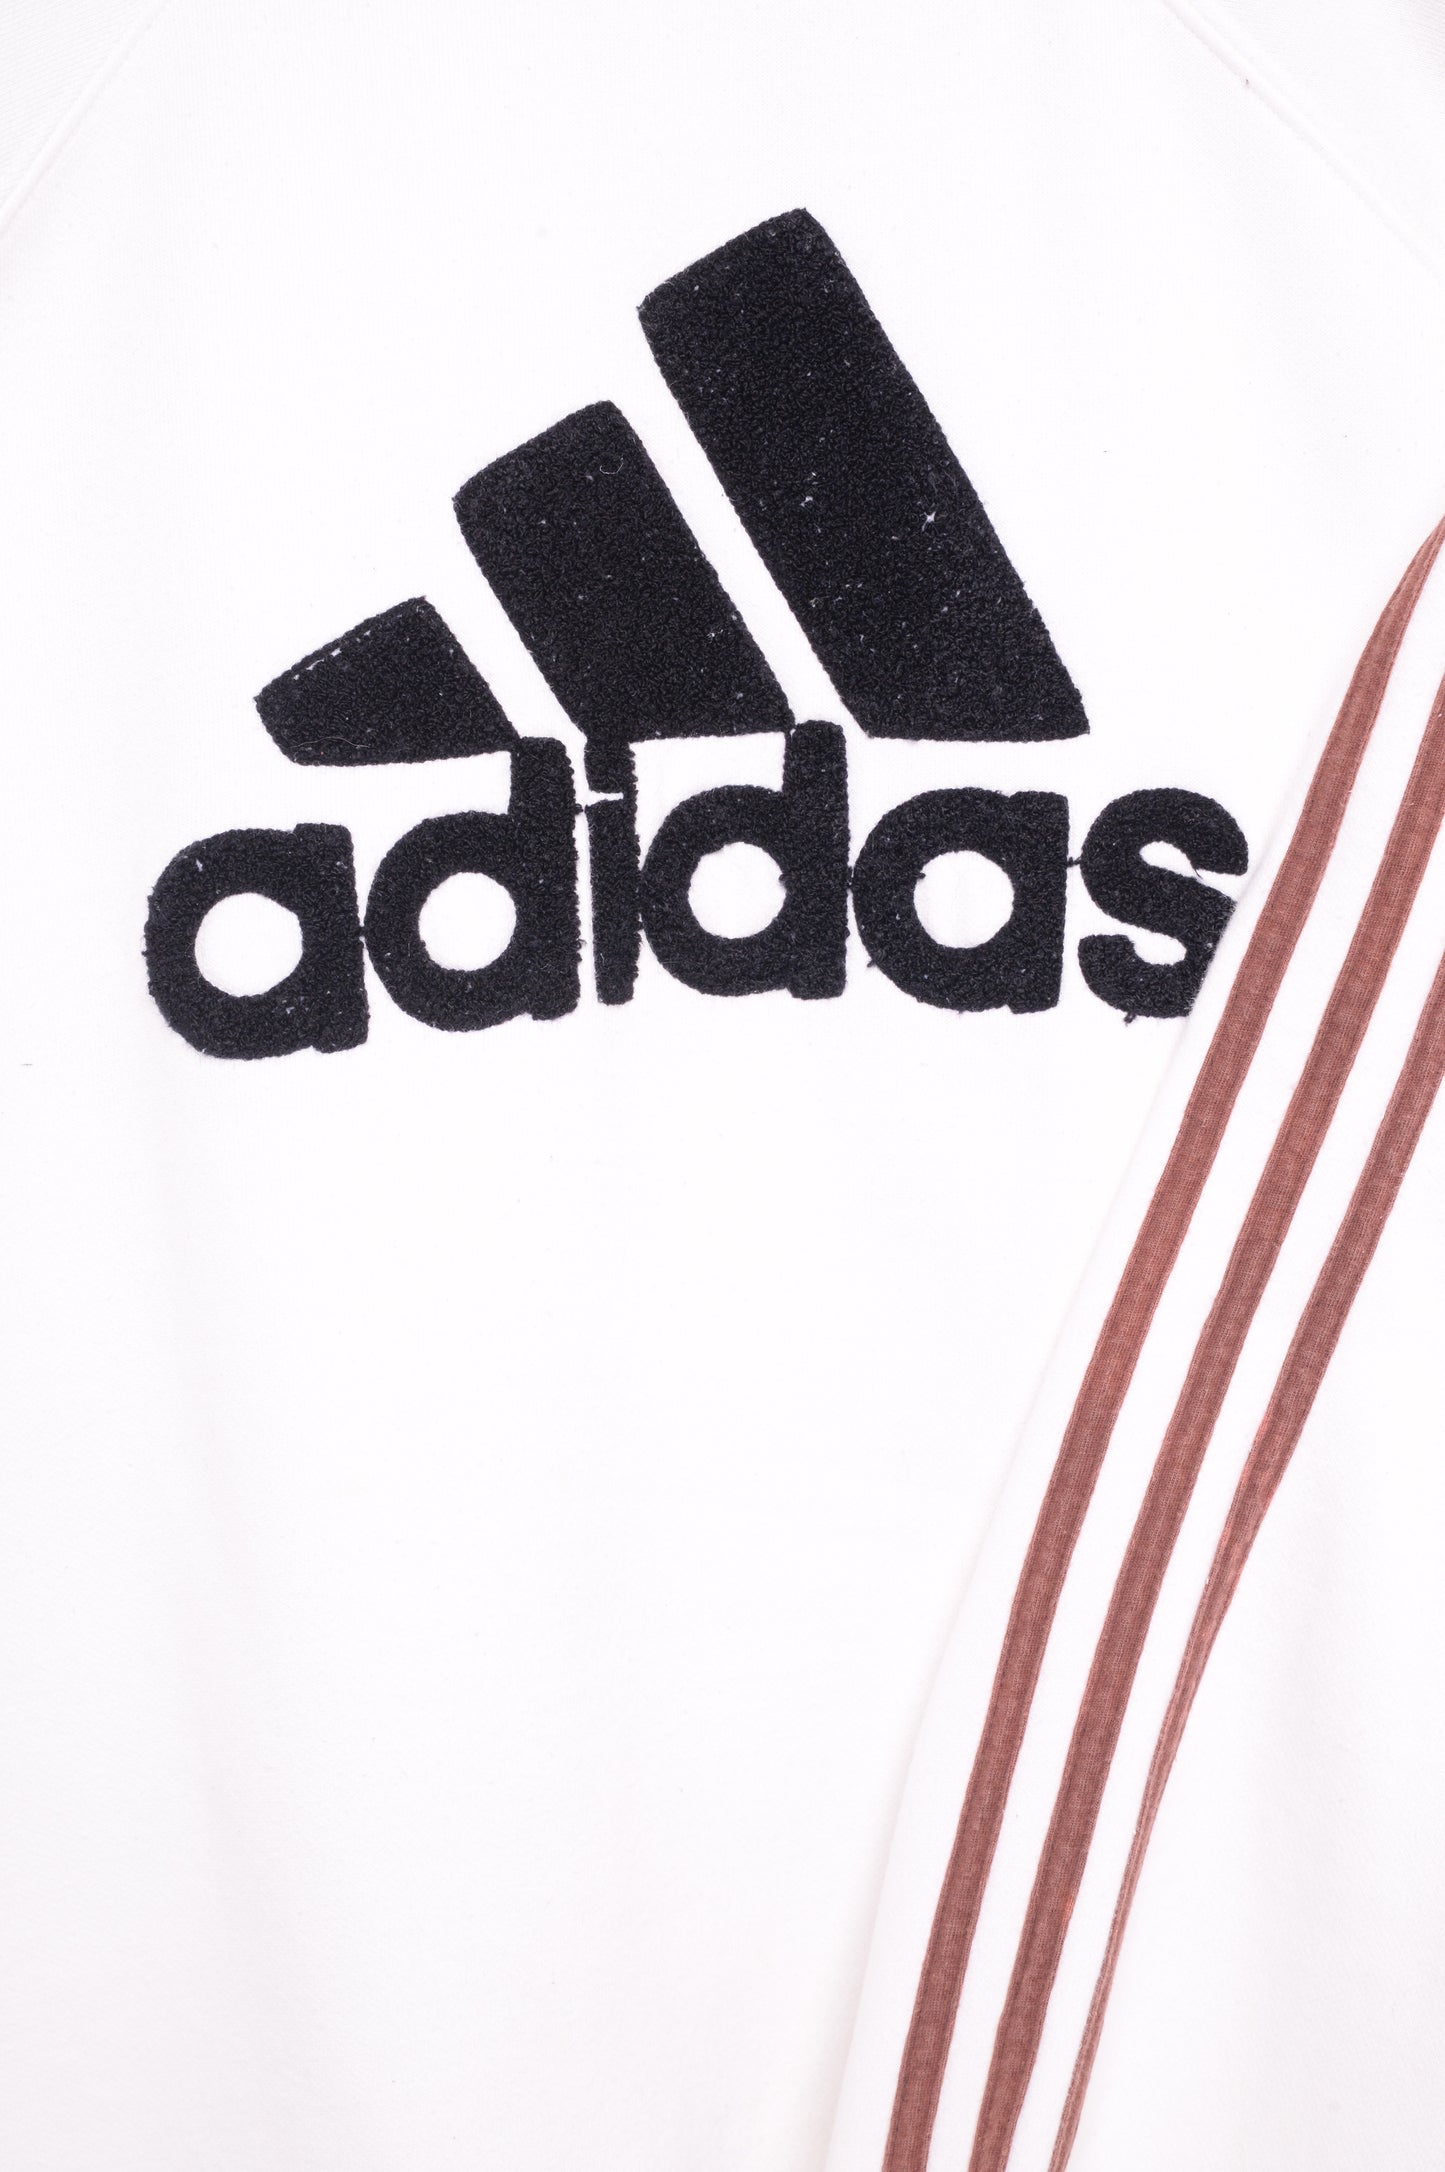 1980s Adidas Raglan Sweatshirt